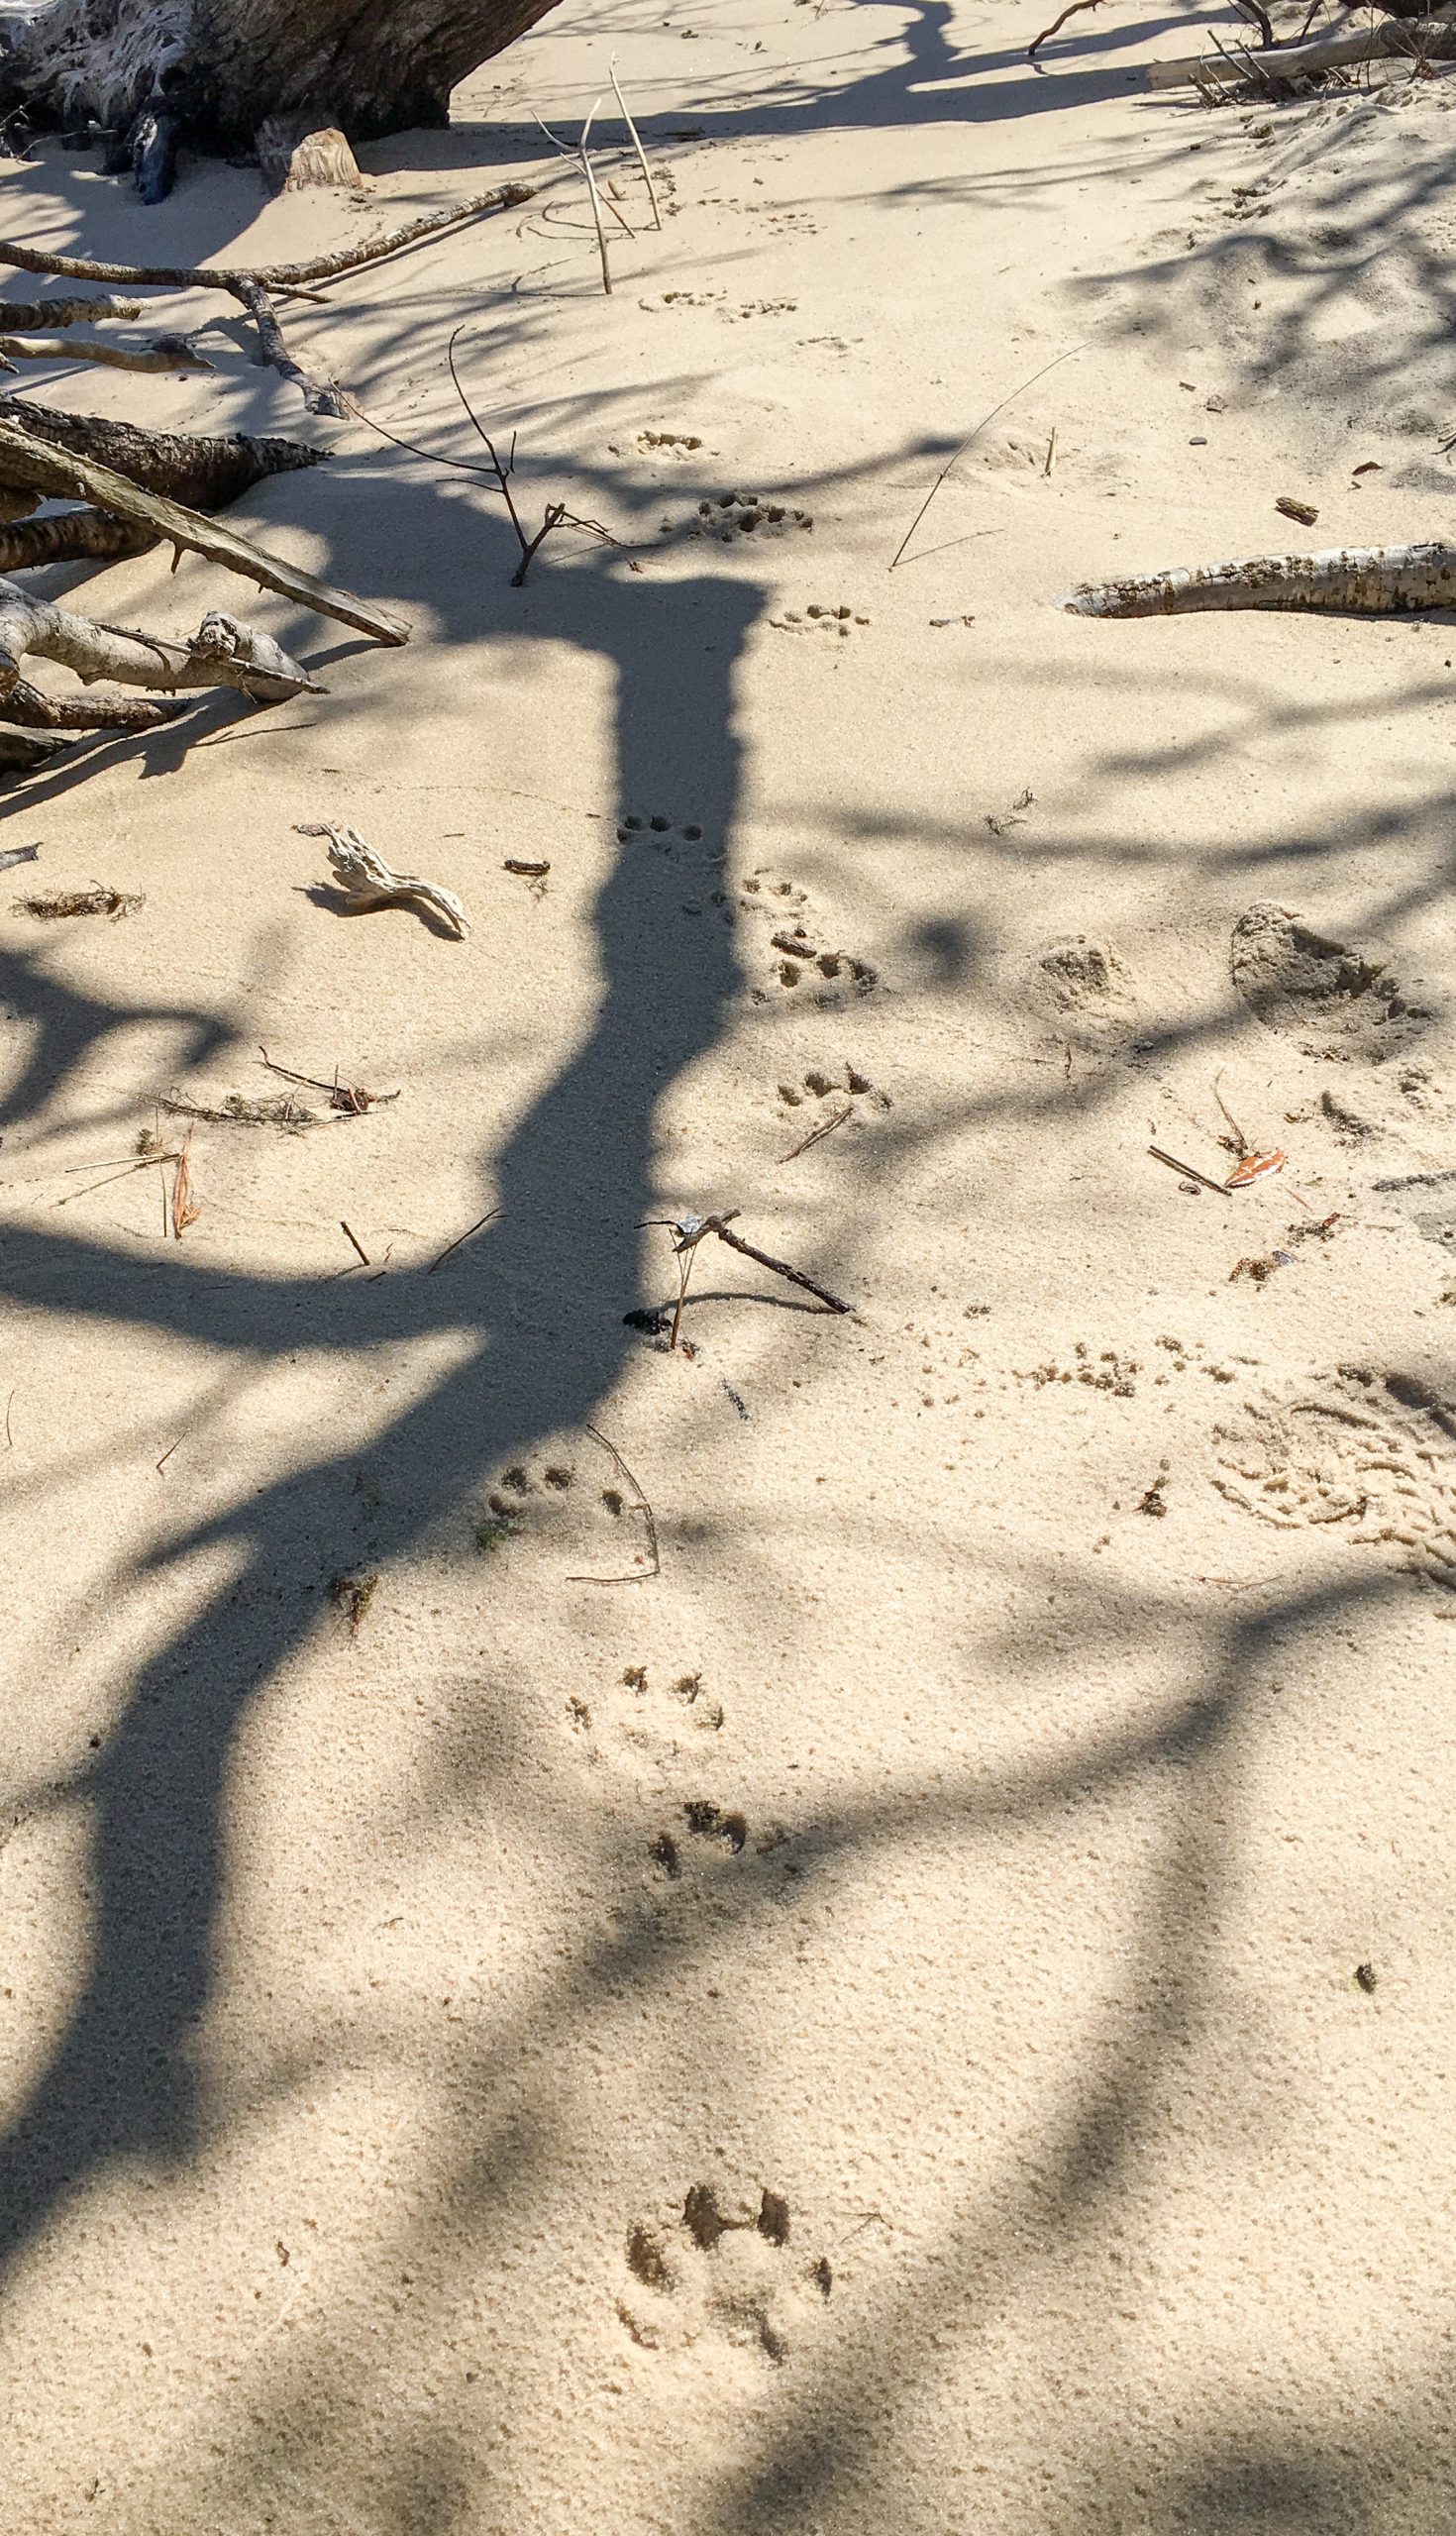 River otter tracks in sand.